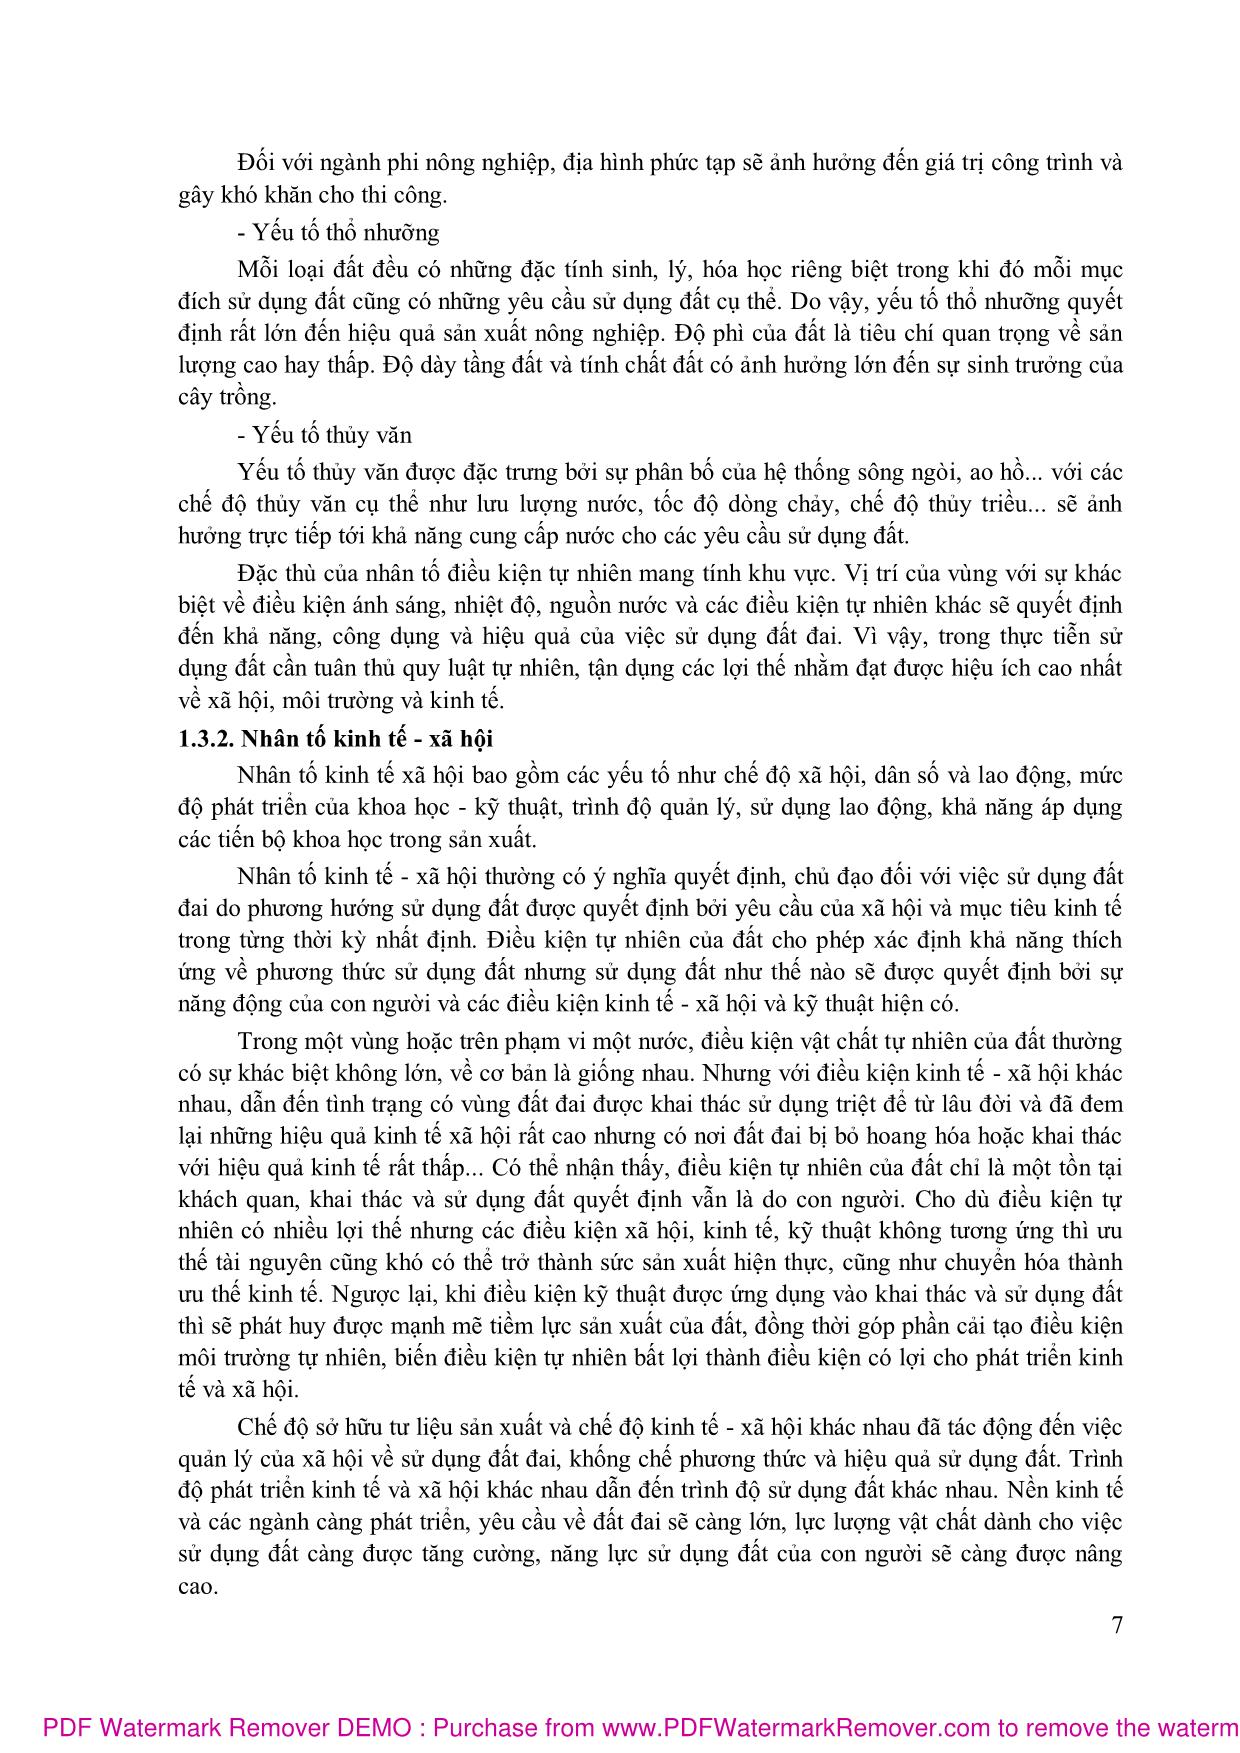 Bài giảng quy hoạch sử dụng đất (Phần 1) - Nguyễn Thị Hải trang 8